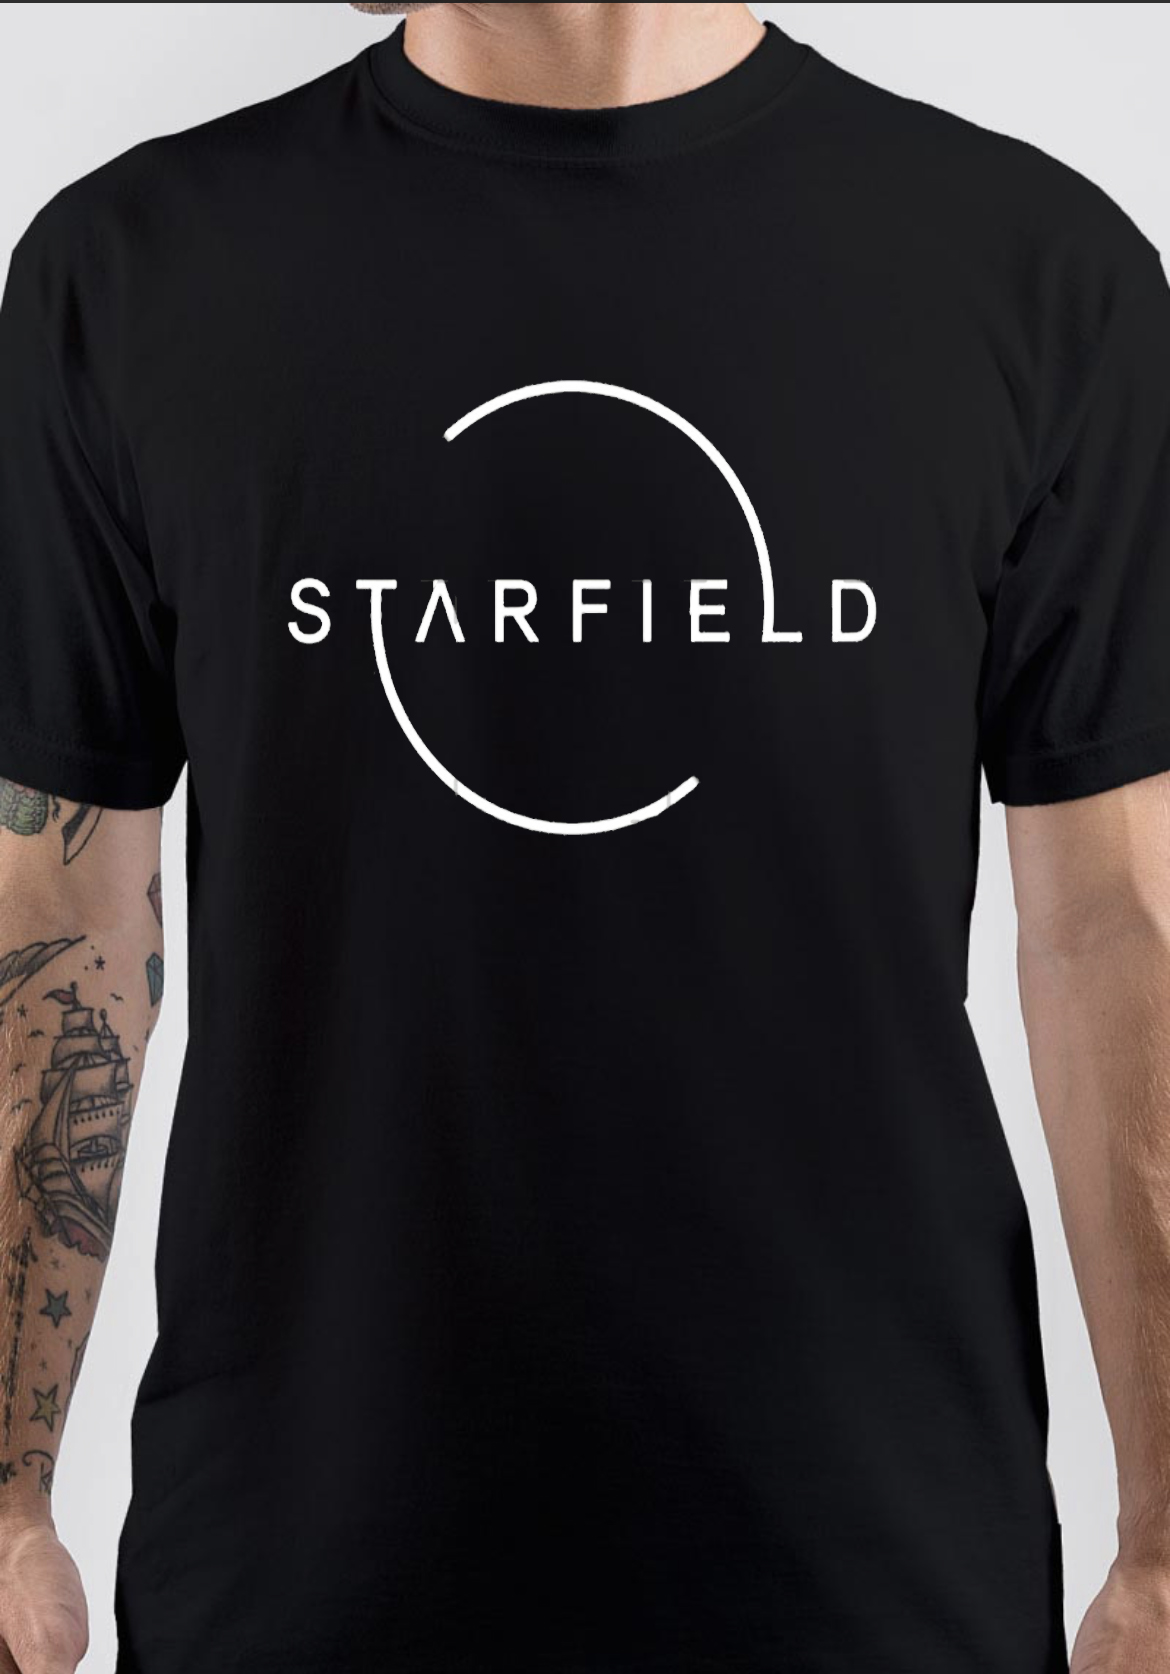 Starfield T-Shirt And Merchandise